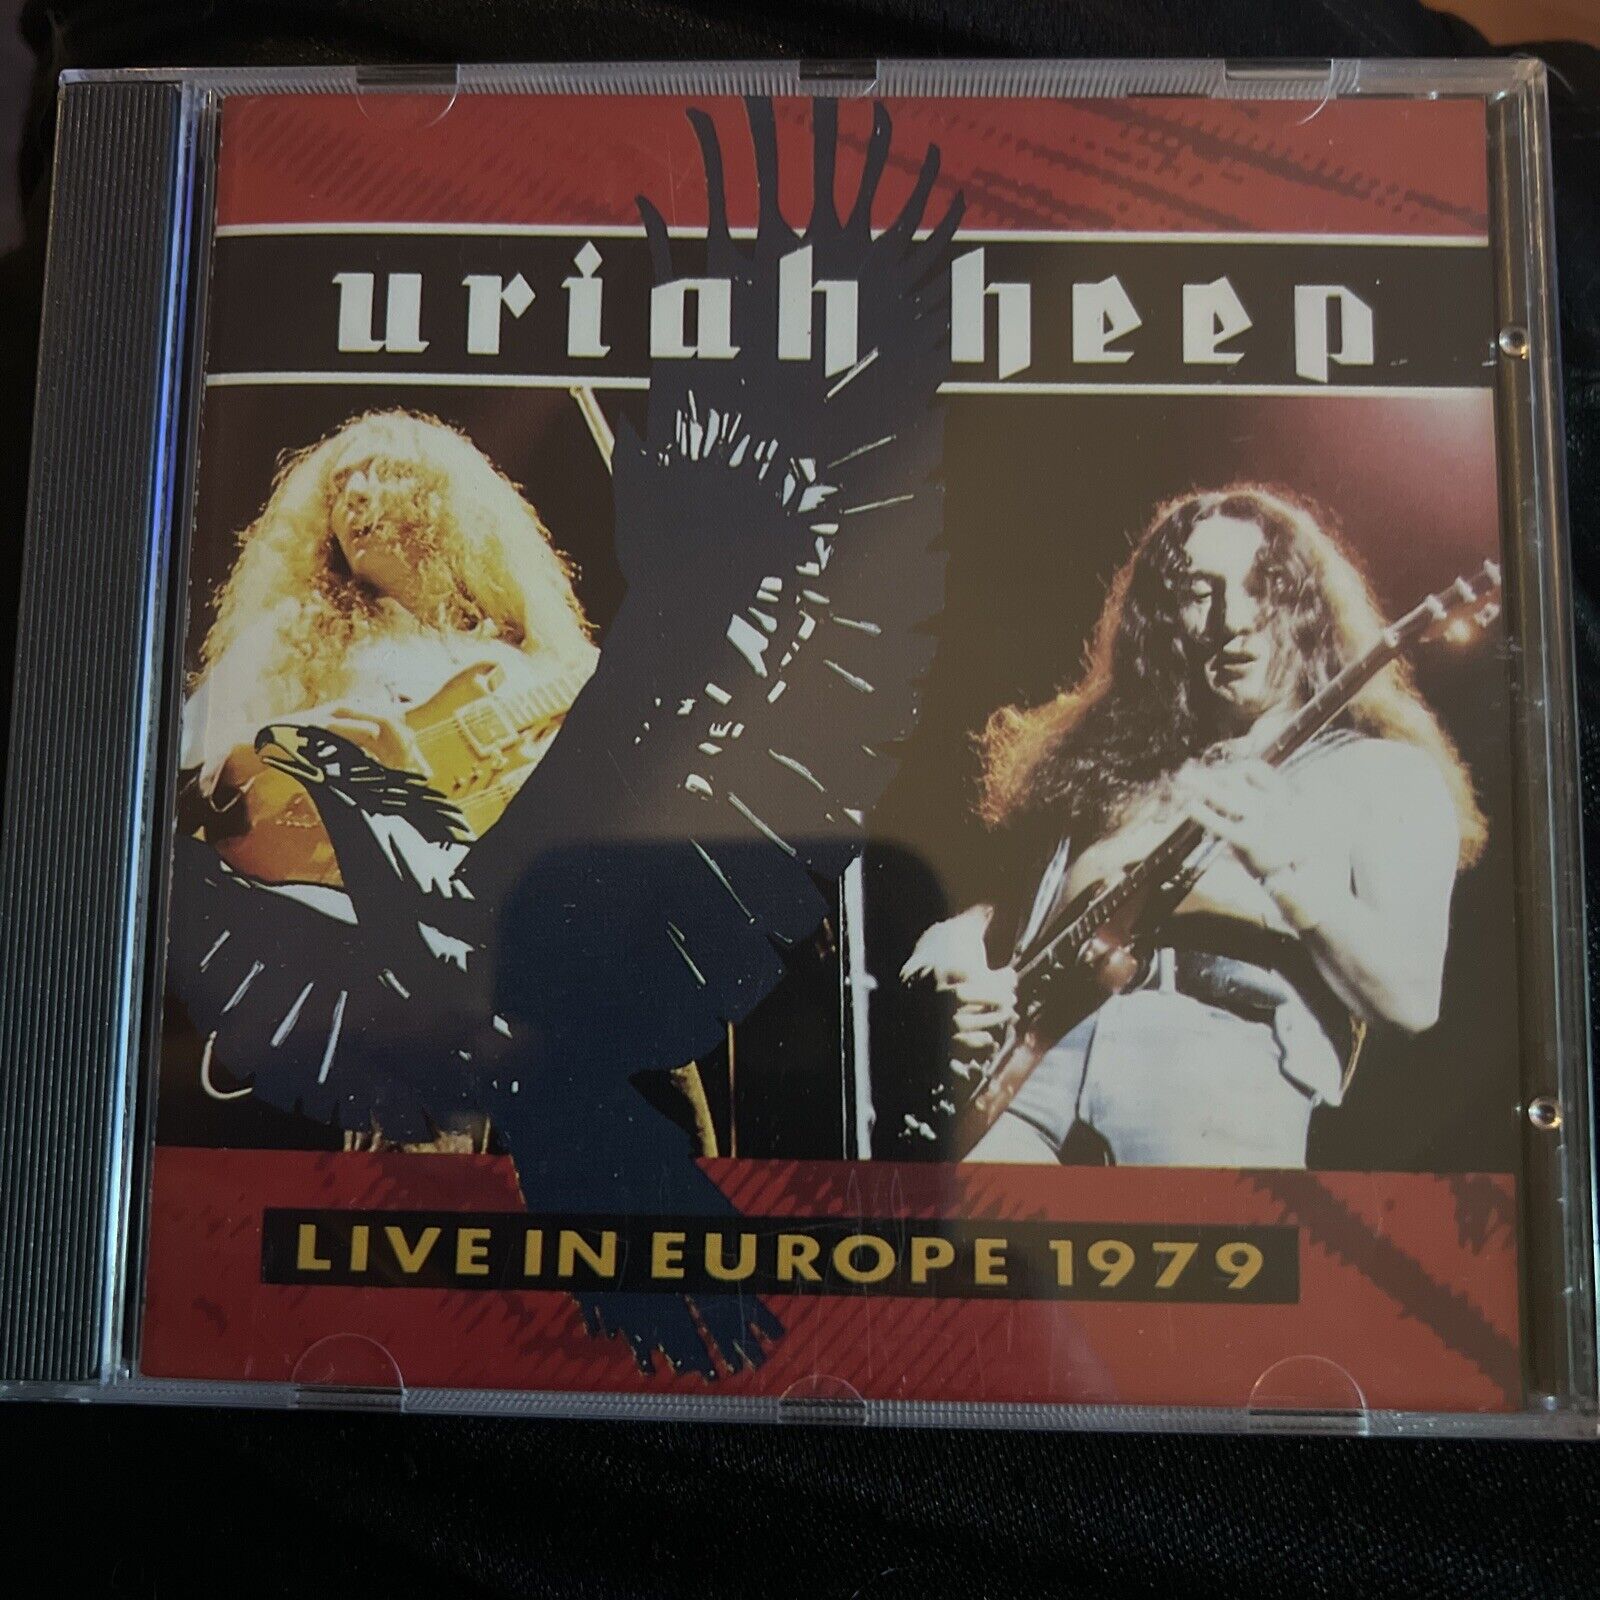 Uriah Heep-Live in Europe 1979 by Uriah Heep (CD, 2006)